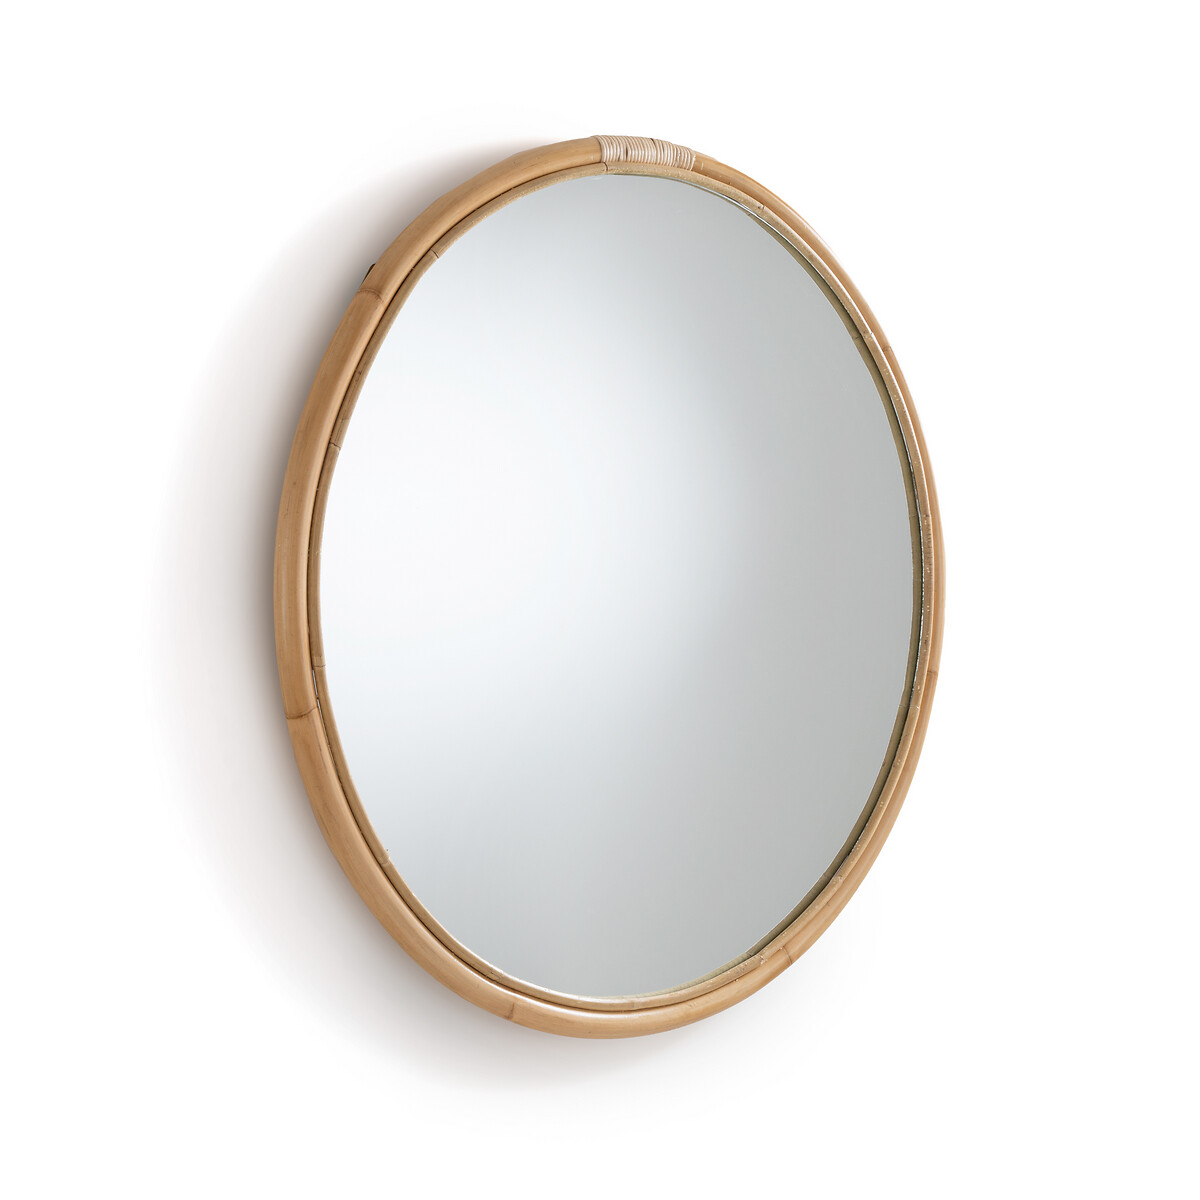 Зеркало круглое из ротанга 90 см Nogu единый размер бежевый зеркало круглое из ротанга 60 см nogu единый размер бежевый